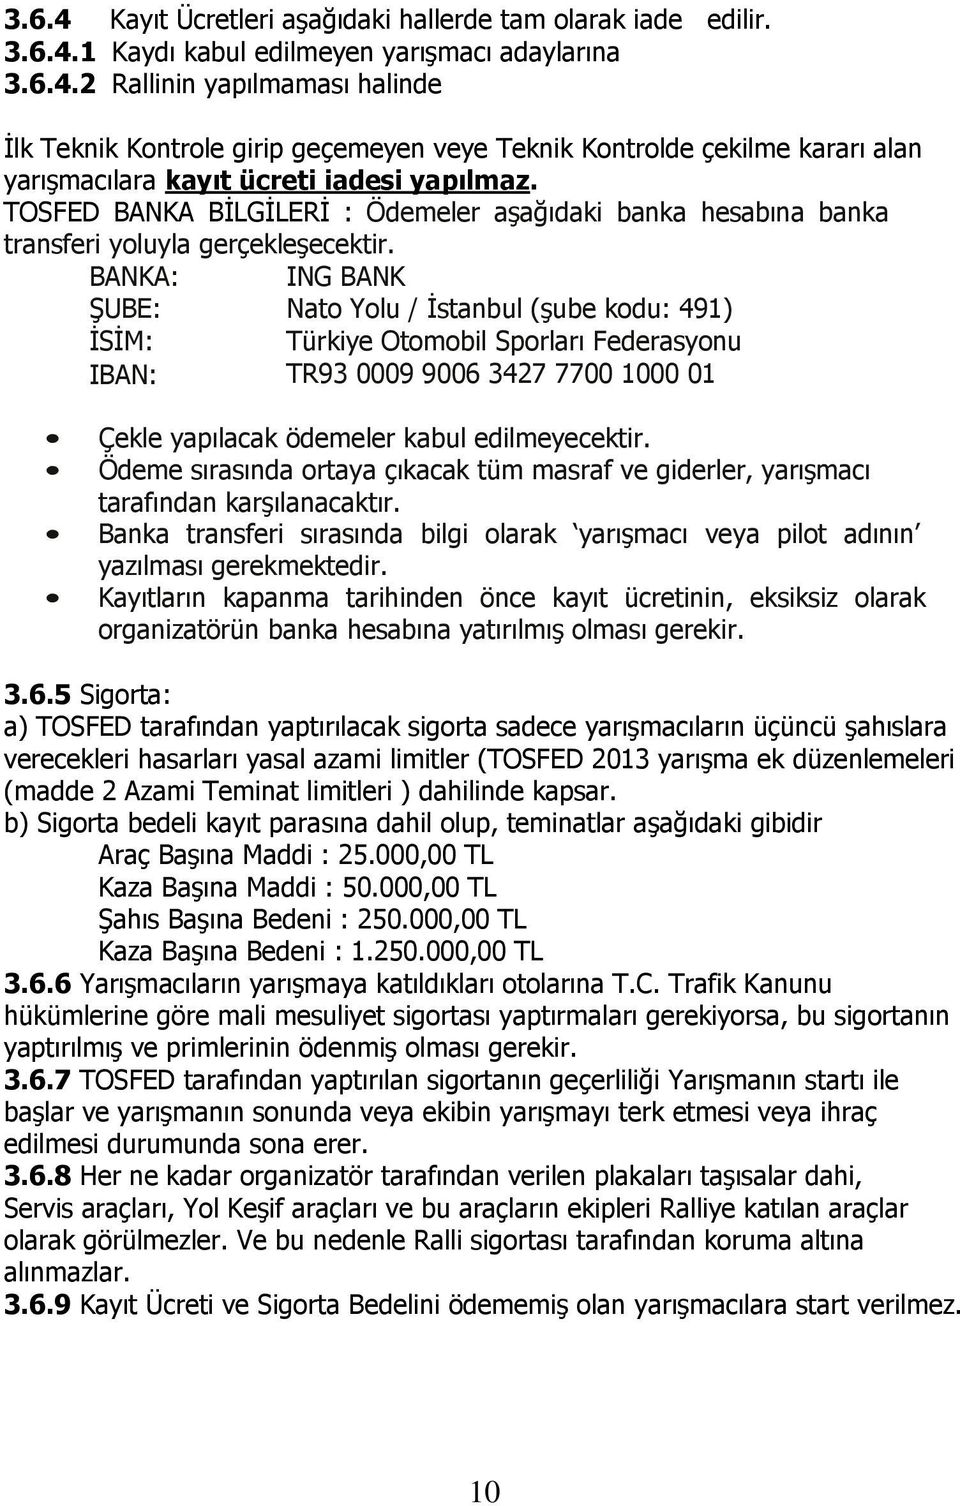 BANKA: ING BANK ŞUBE: Nato Yolu / İstanbul (şube kodu: 491) İSİM: Türkiye Otomobil Sporları Federasyonu IBAN: TR93 0009 9006 3427 7700 1000 01 Çekle yapılacak ödemeler kabul edilmeyecektir.